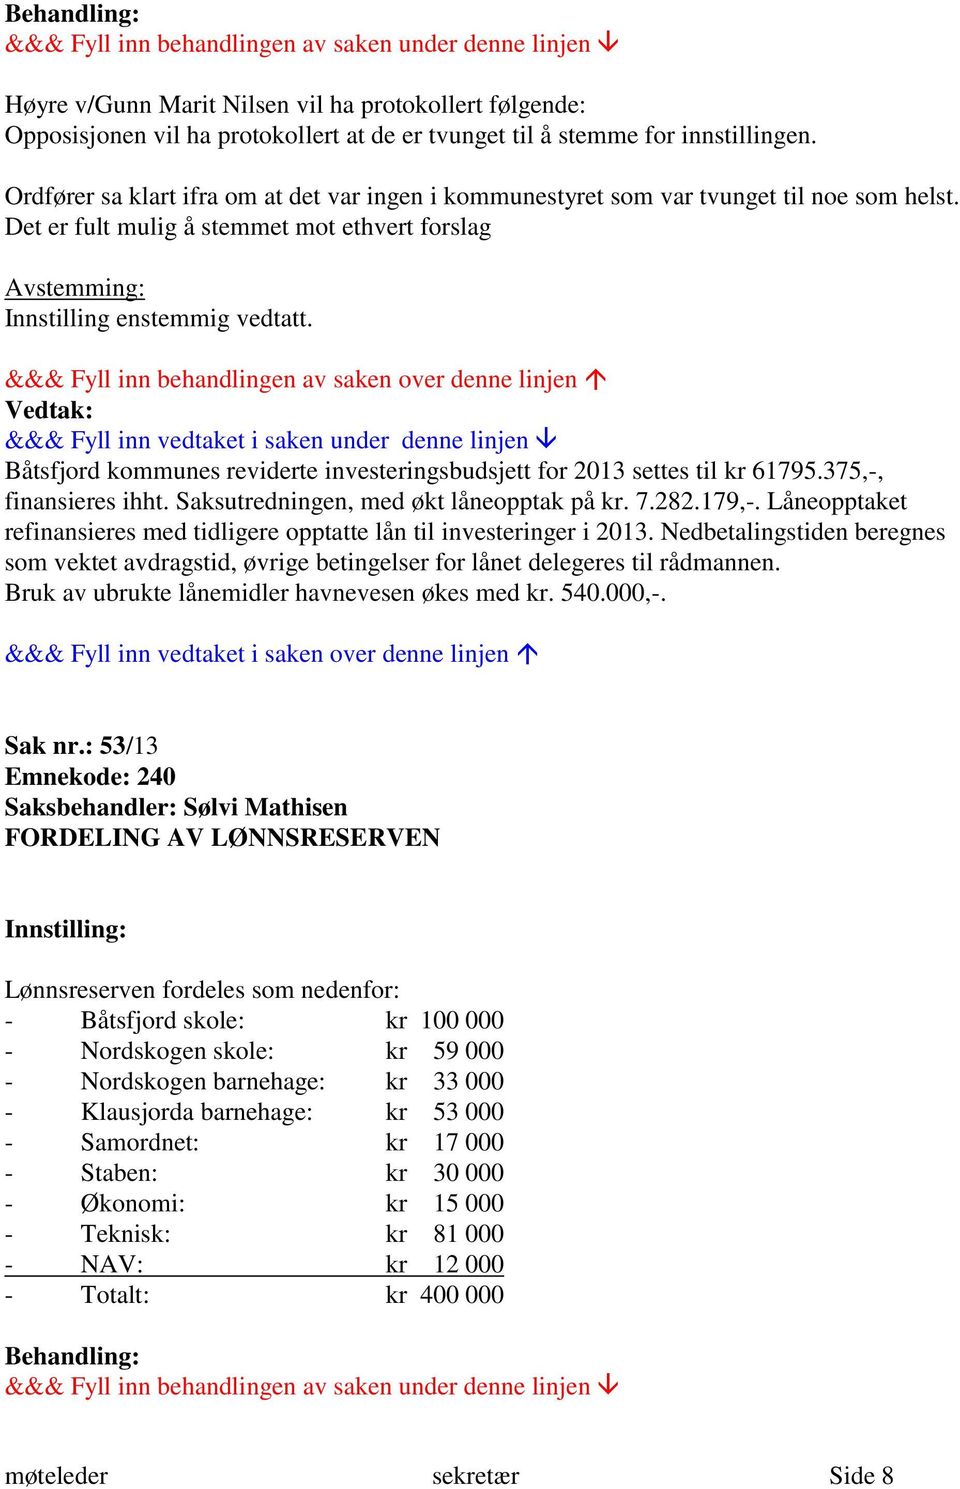 Båtsfjord kommunes reviderte investeringsbudsjett for 2013 settes til kr 61795.375,-, finansieres ihht. Saksutredningen, med økt låneopptak på kr. 7.282.179,-.